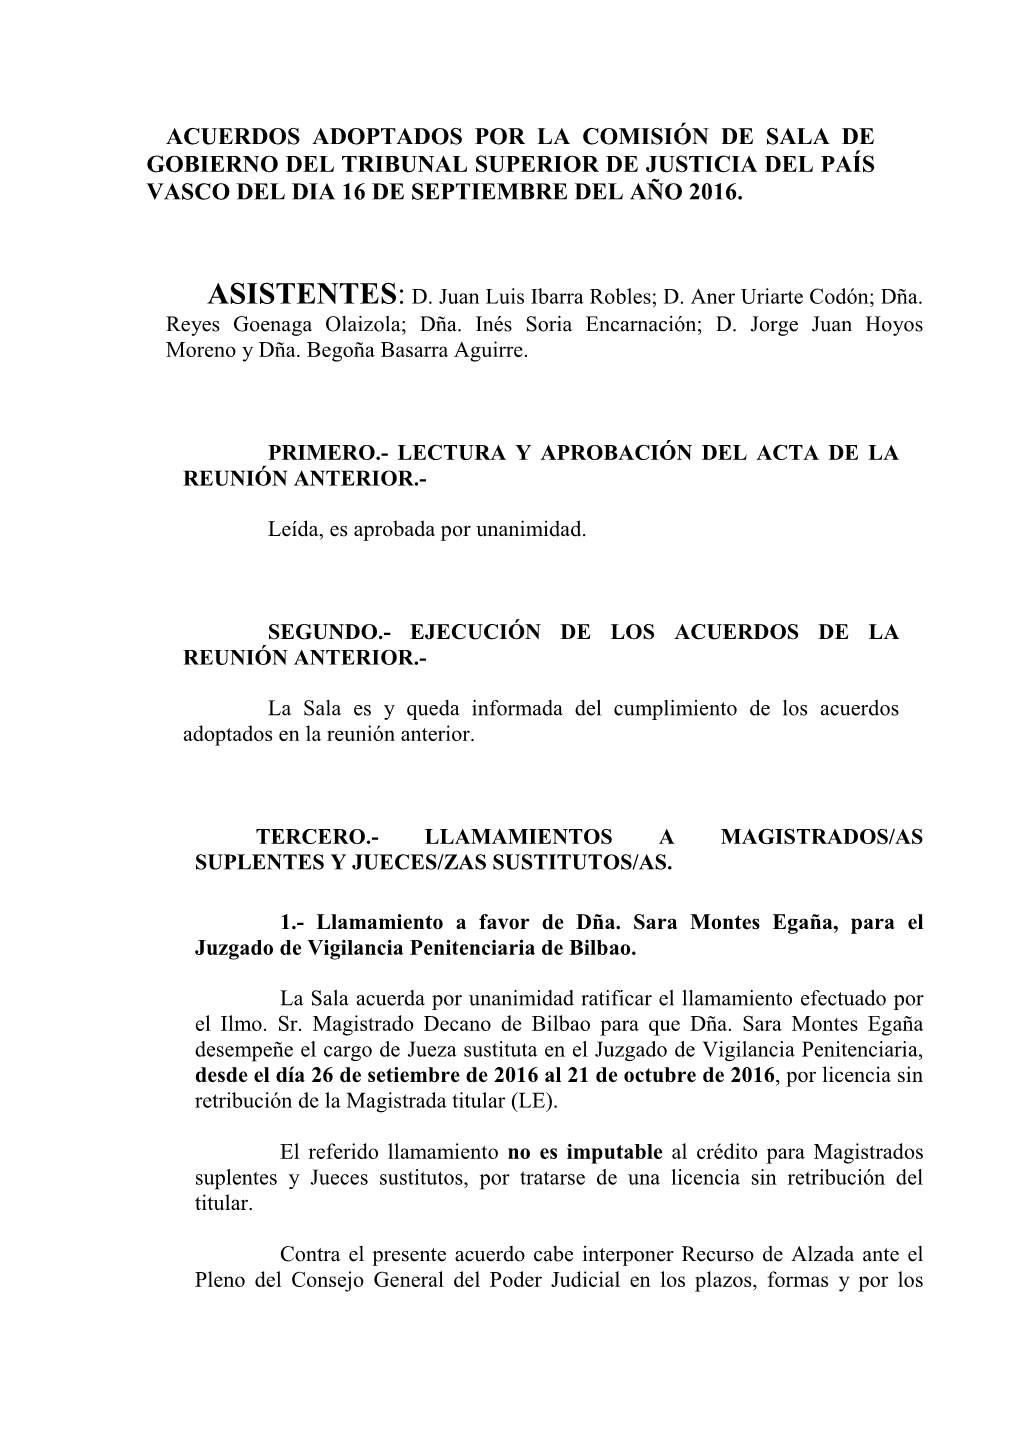 Acuerdos Adoptados Por La Comisión De Sala De Gobierno Del Tribunal Superior De Justicia Del País Vasco Del Dia 16 De Septiembre Del Año 2016